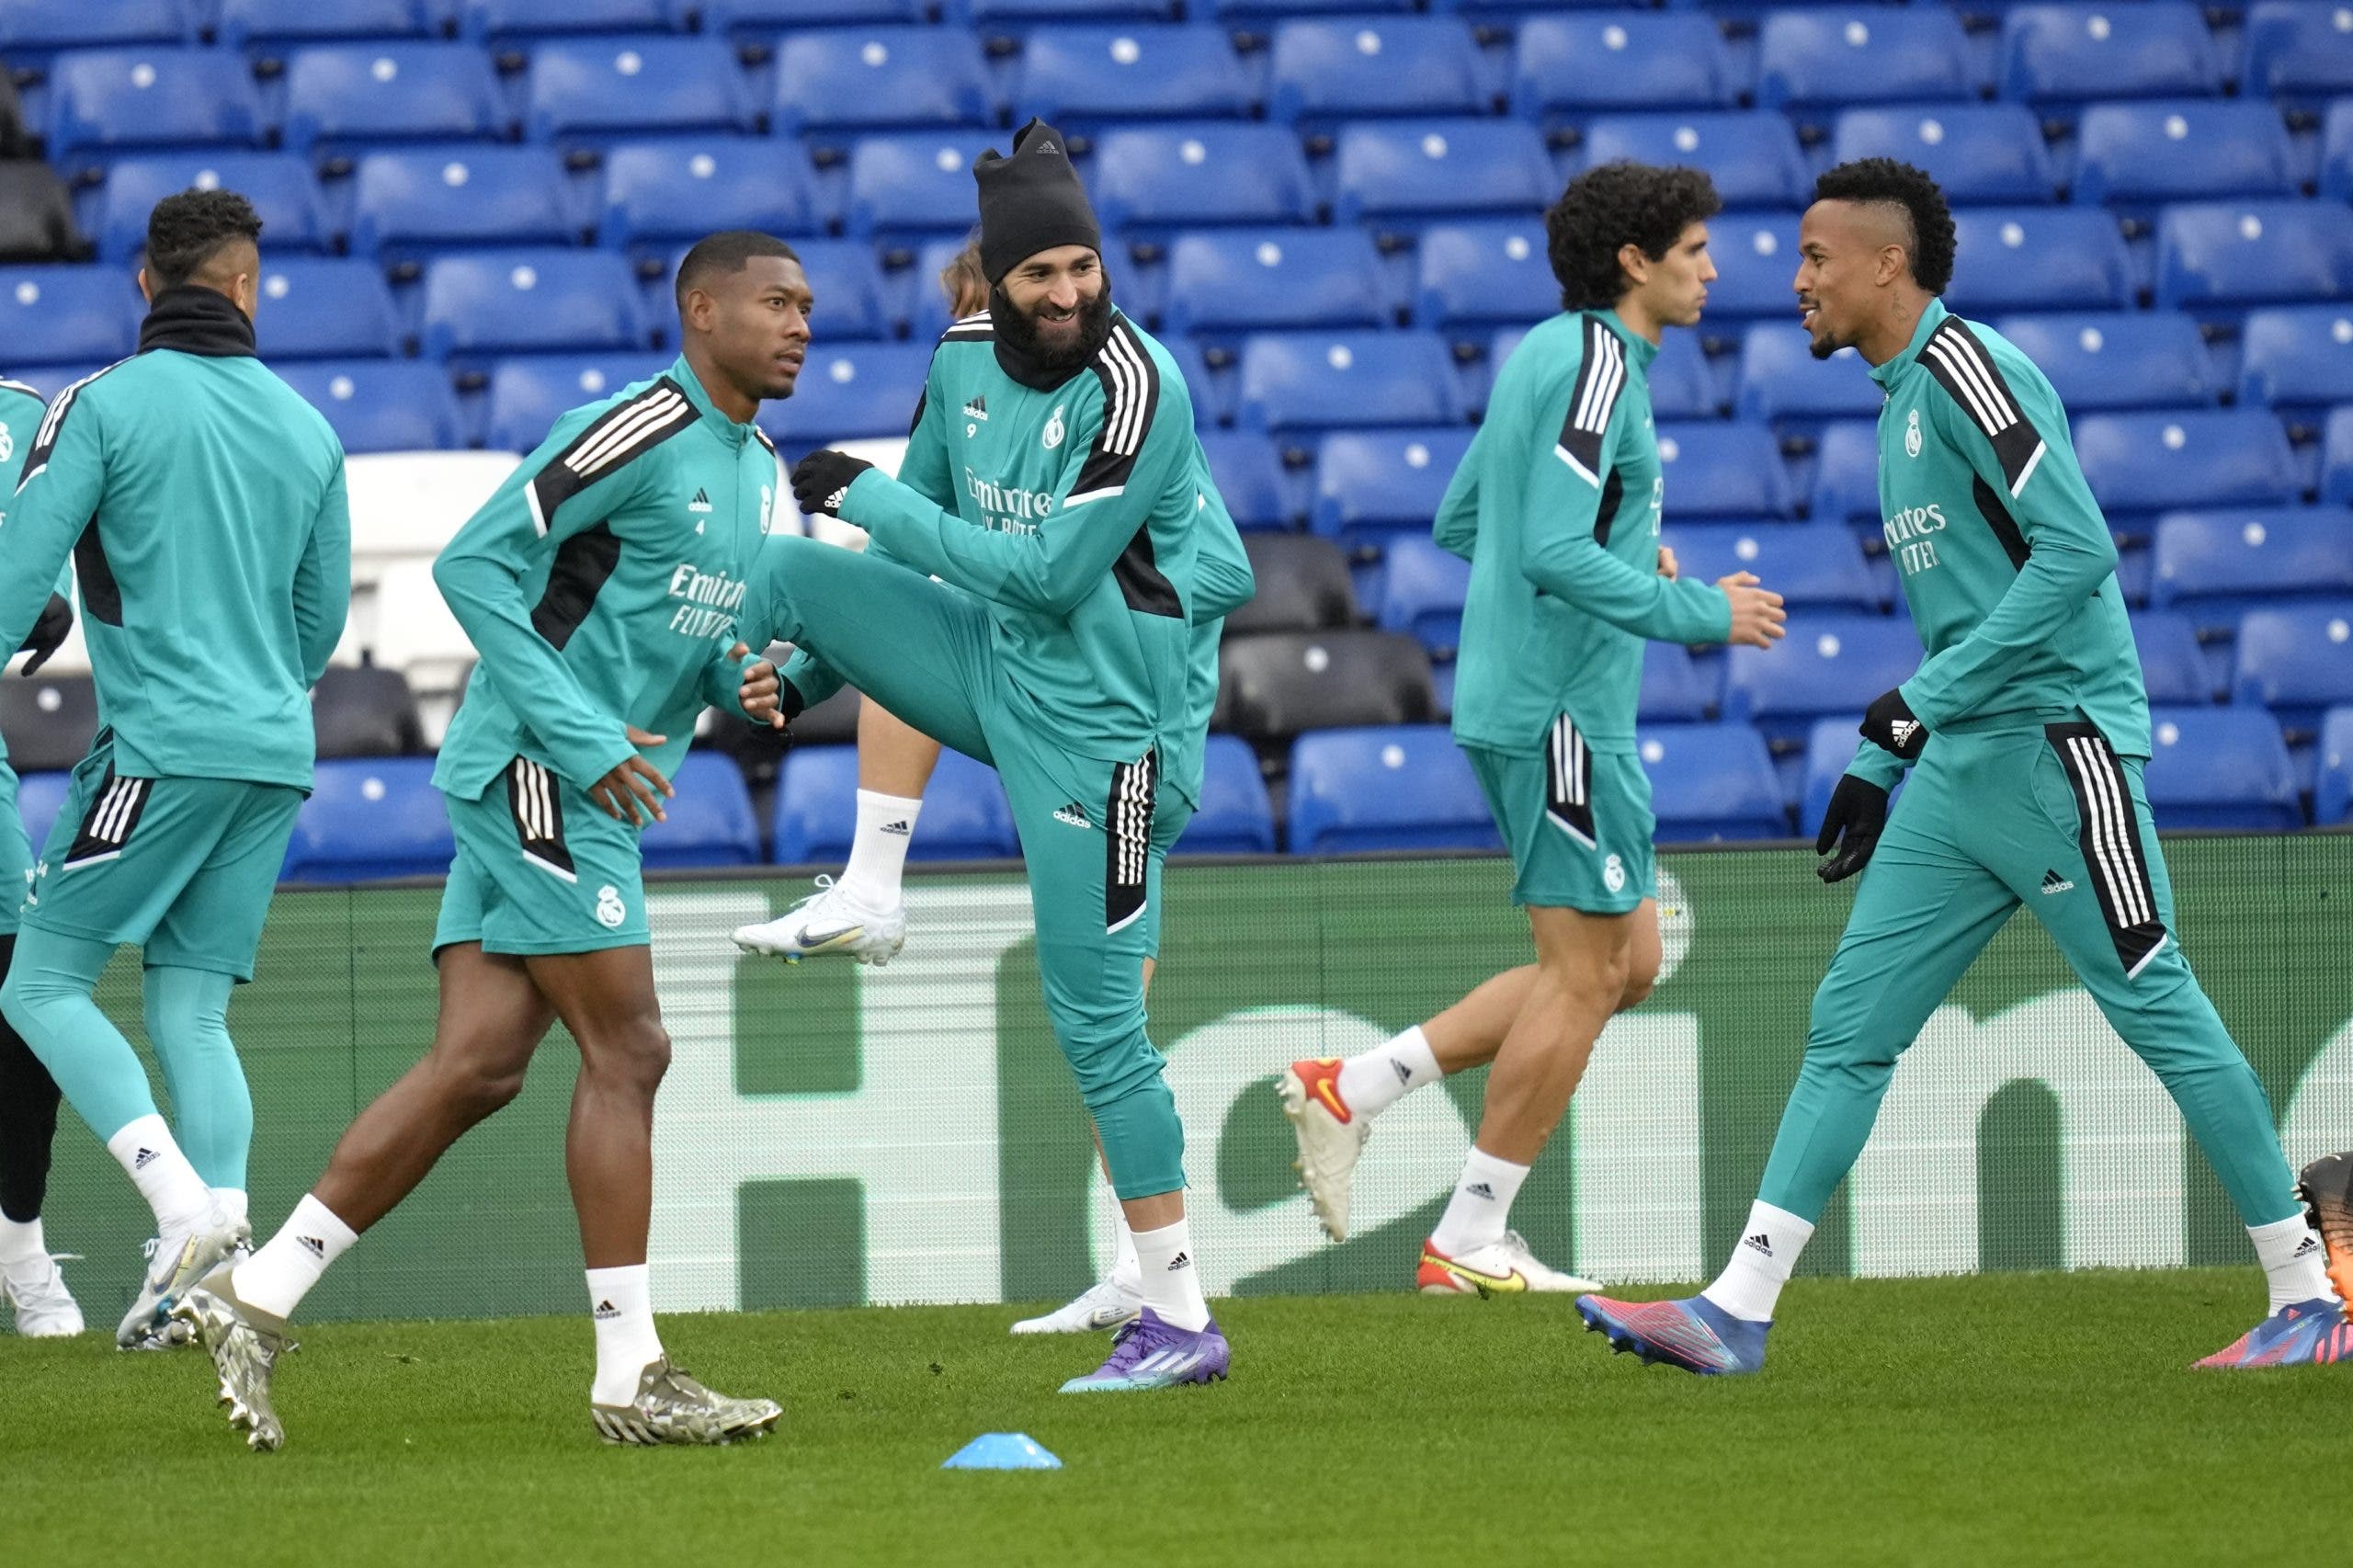 El Real Madrid termina de preparar “el plan” en Stamford Bridge